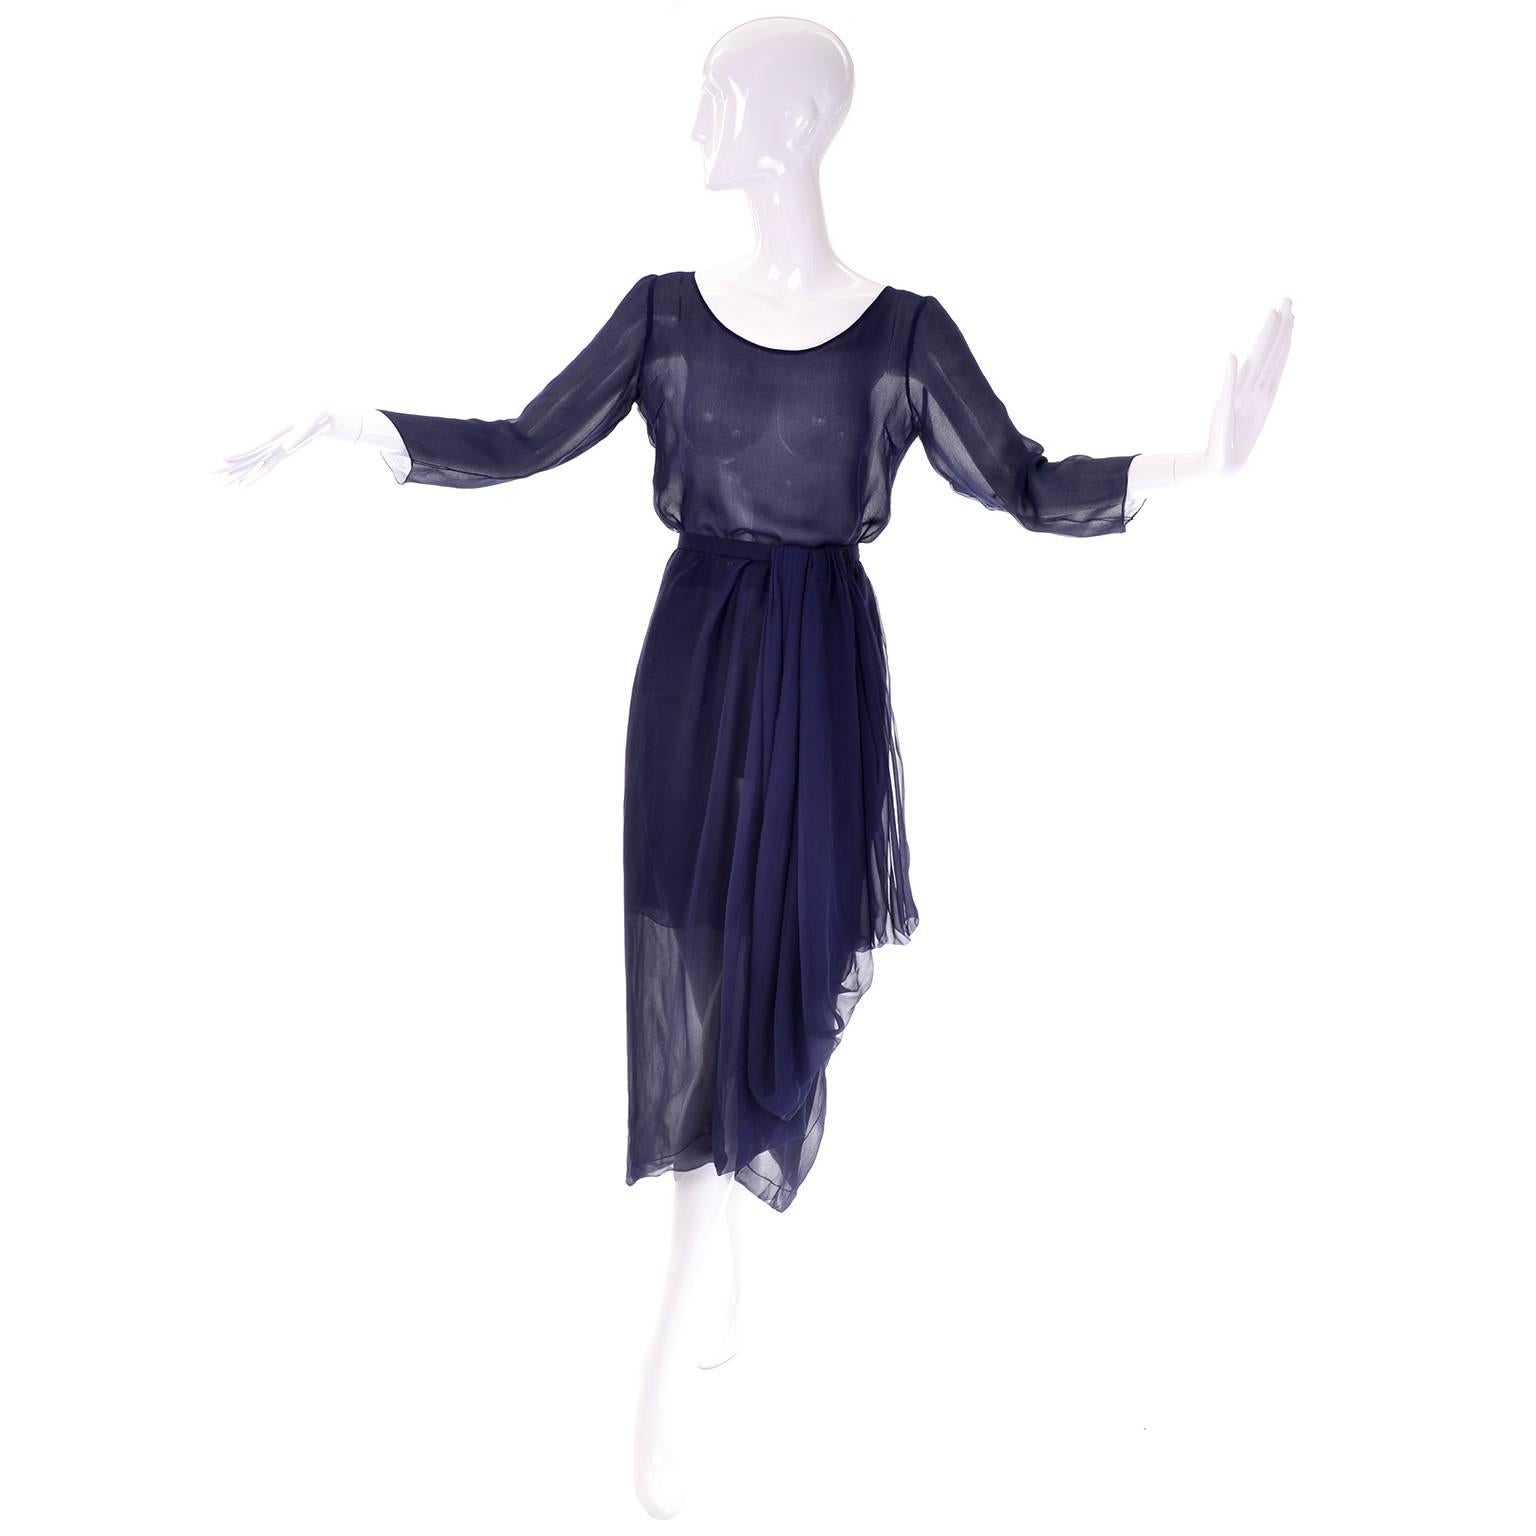 Voici une exquise robe de soirée haute couture vintage 2 pièces en mousseline de soie 100% bleu marine de Christian Dior Paris. Cet ensemble incroyable comprend un chemisier de style tunique et une magnifique jupe asymétrique drapée. Portée